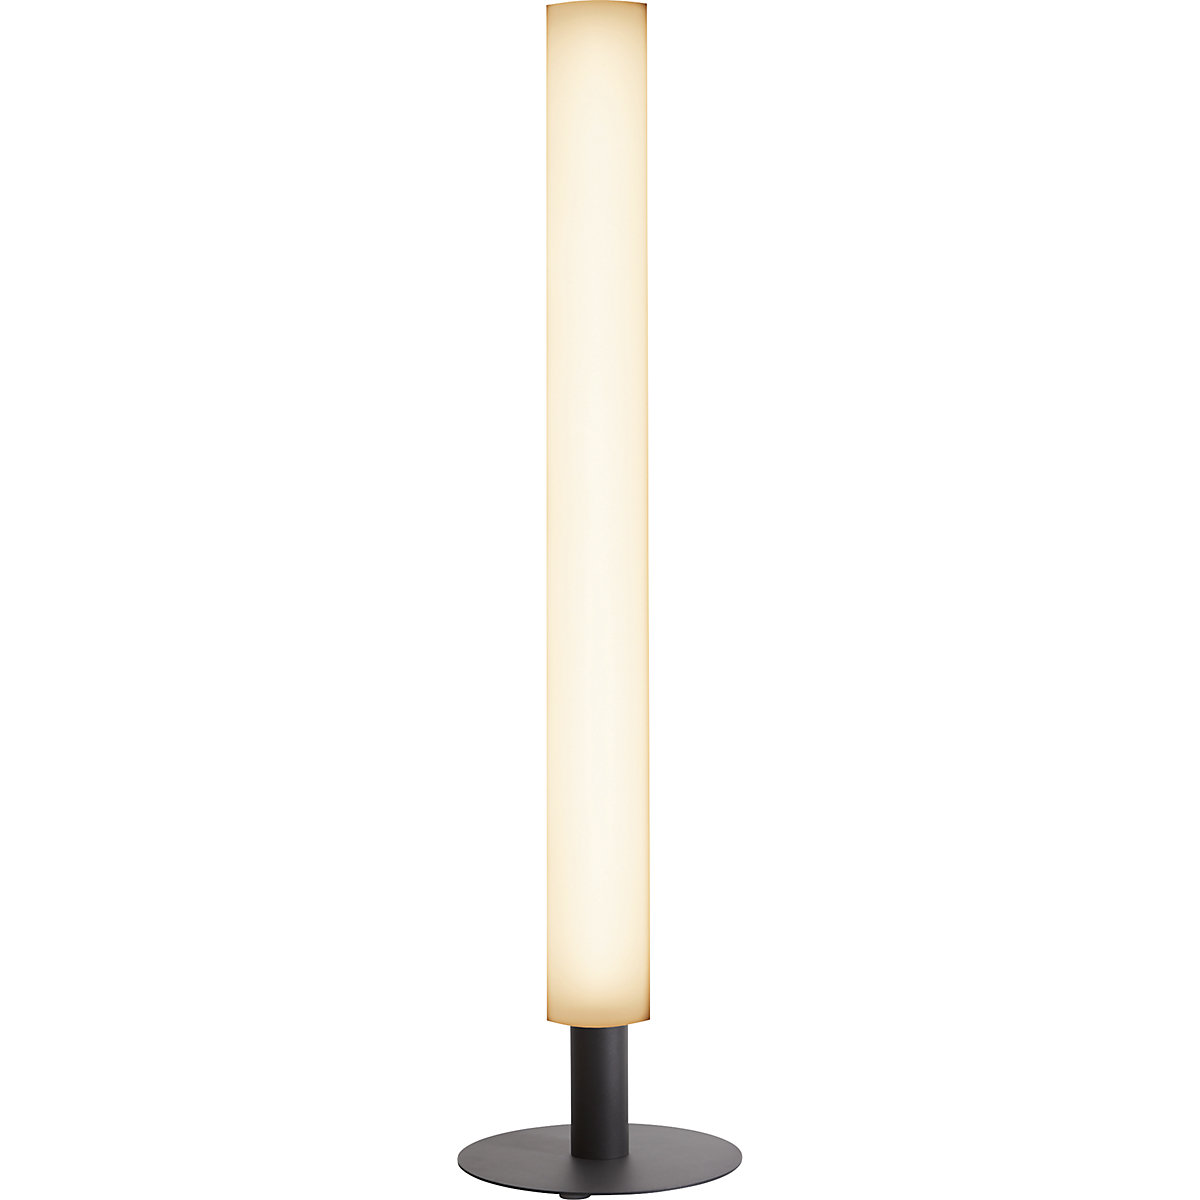 Unutarnja/vanjska svjetiljka LUNOCS, ROUND, uključujući podnožje, 670 lm, u antracit boji-6